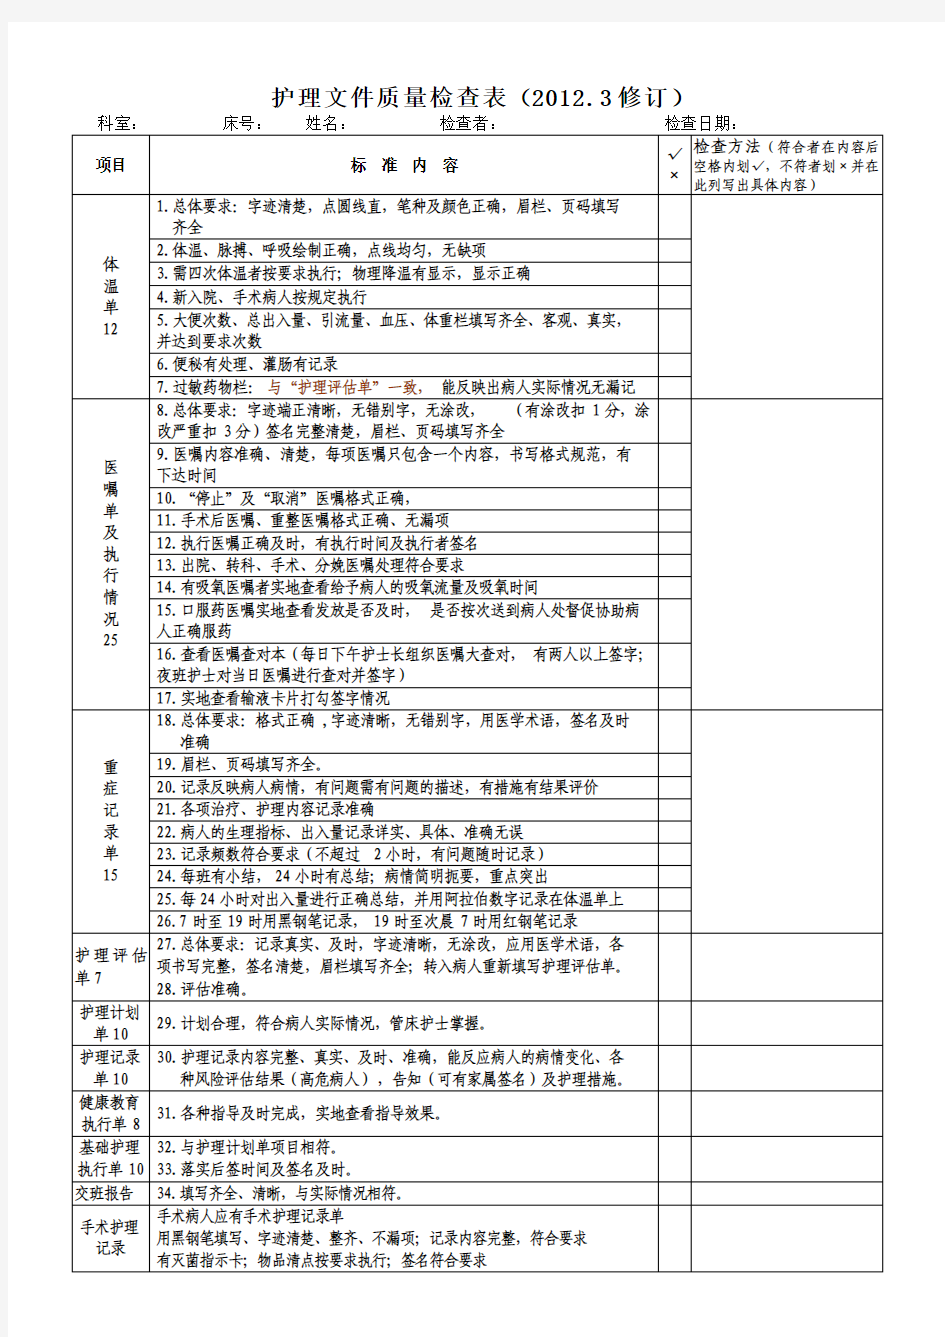 68.护理文件质量检查表(2012.3修订)